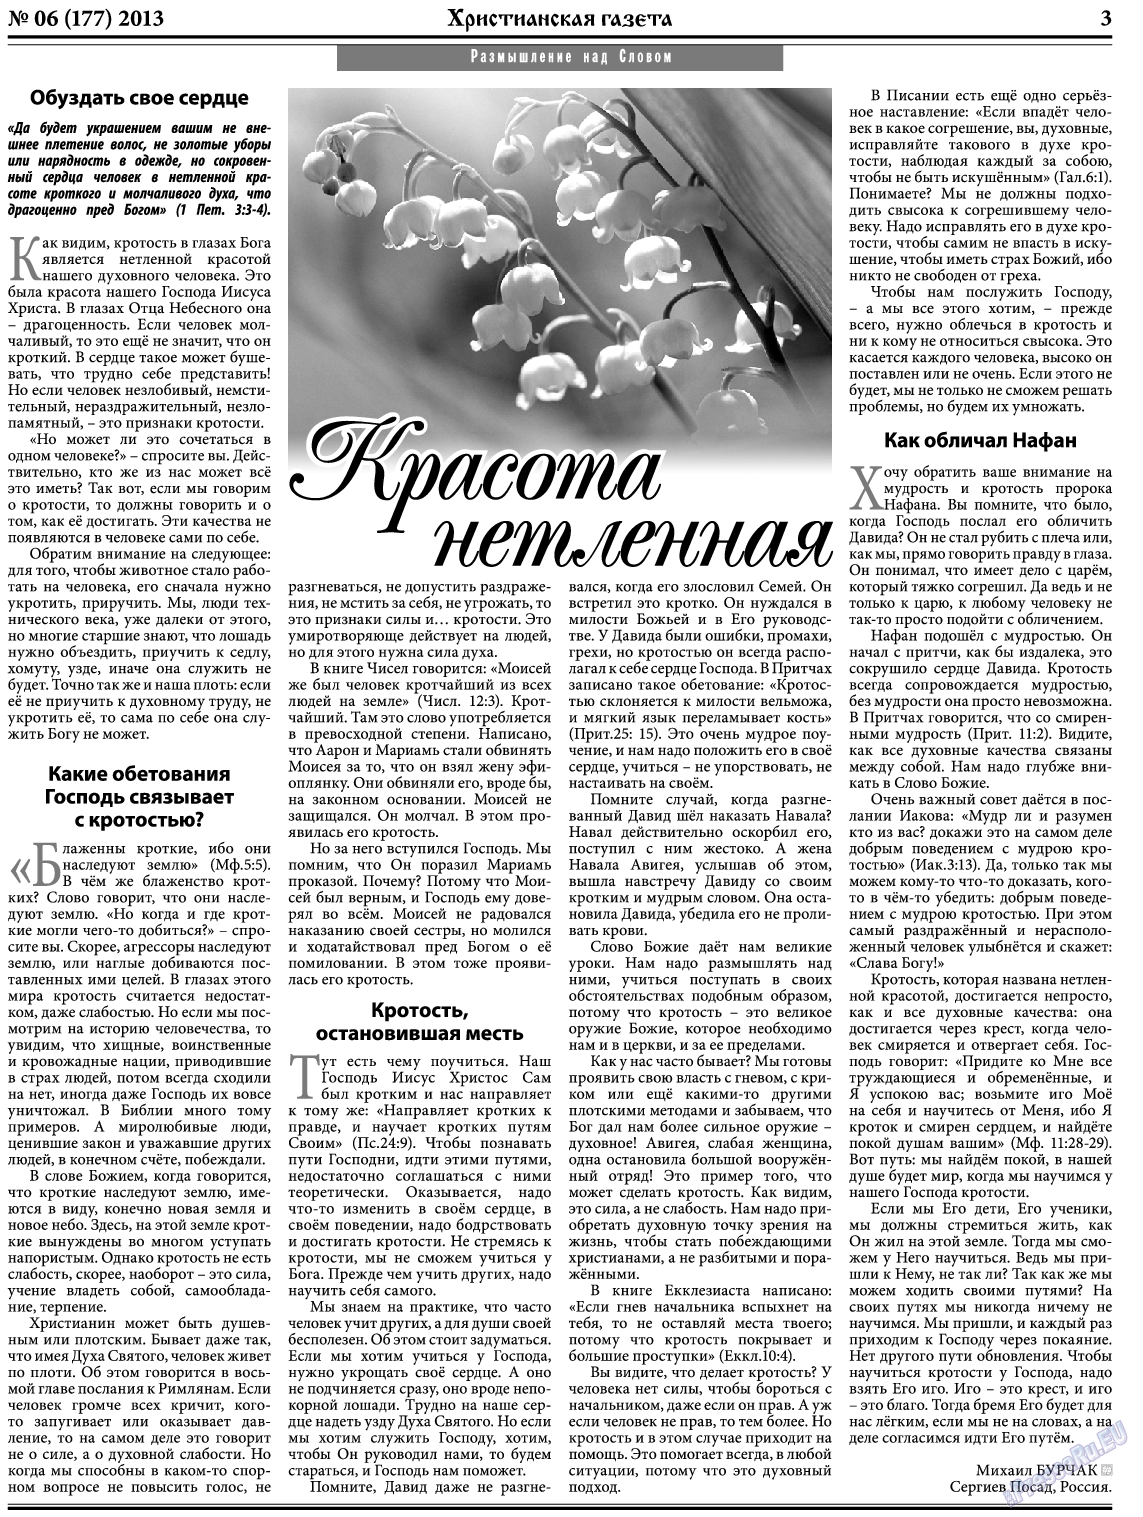 Христианская газета, газета. 2013 №6 стр.3